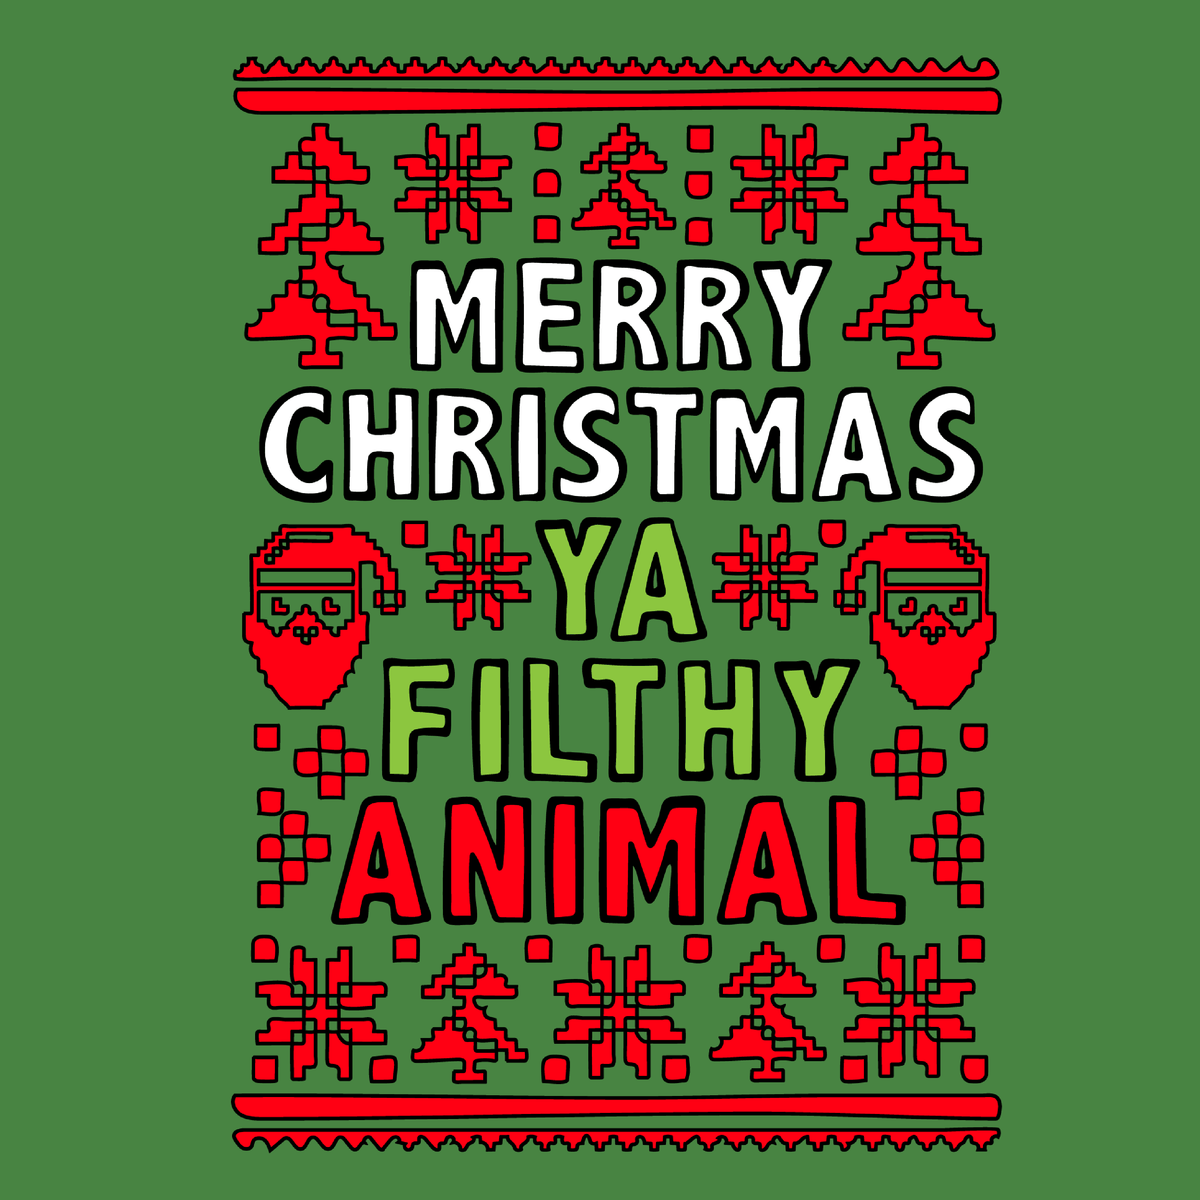 Filthy Animal Christmas 🎅 – Tank